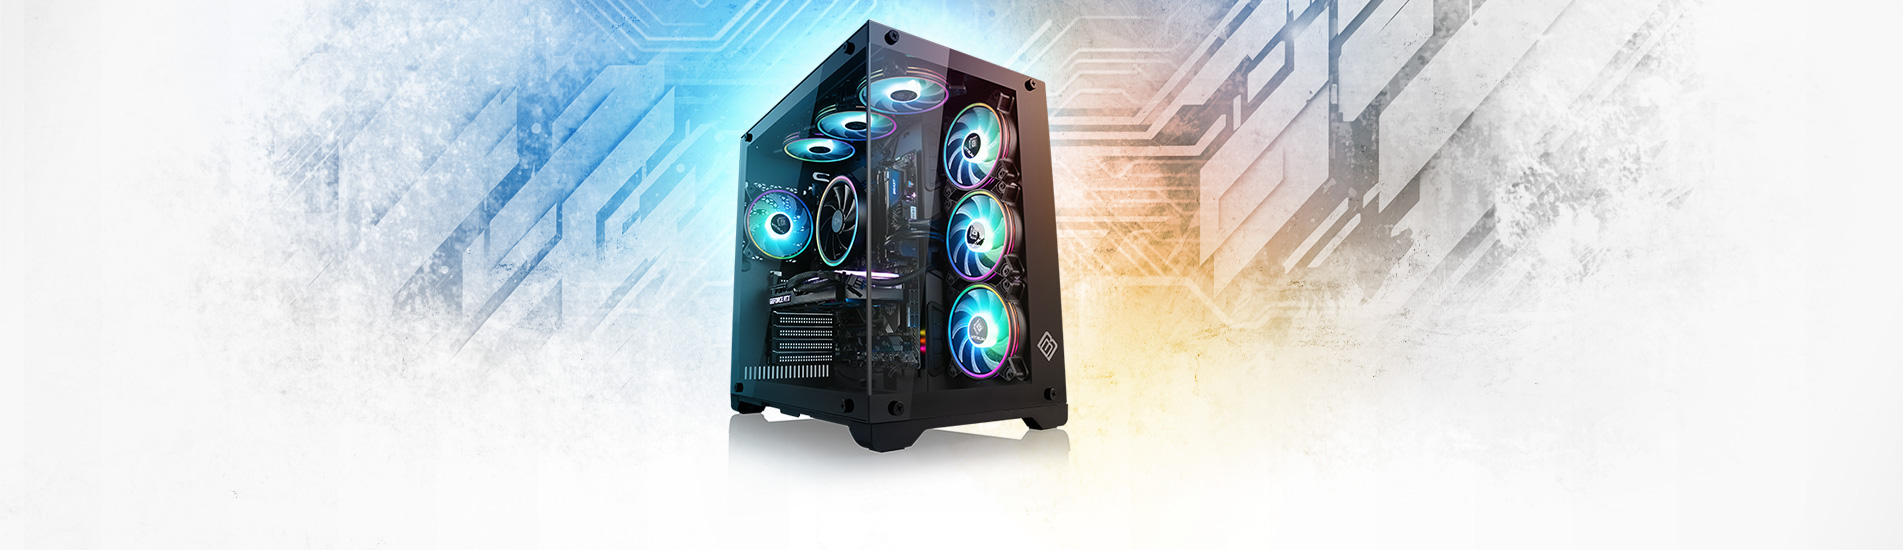 Ein AMD Ryzen 7 Gaming-PC mit starker GeForce RTX 4070 Grafikpower im stylischen RGB/Glas-Design - maßgeschneidert für satte FPS.